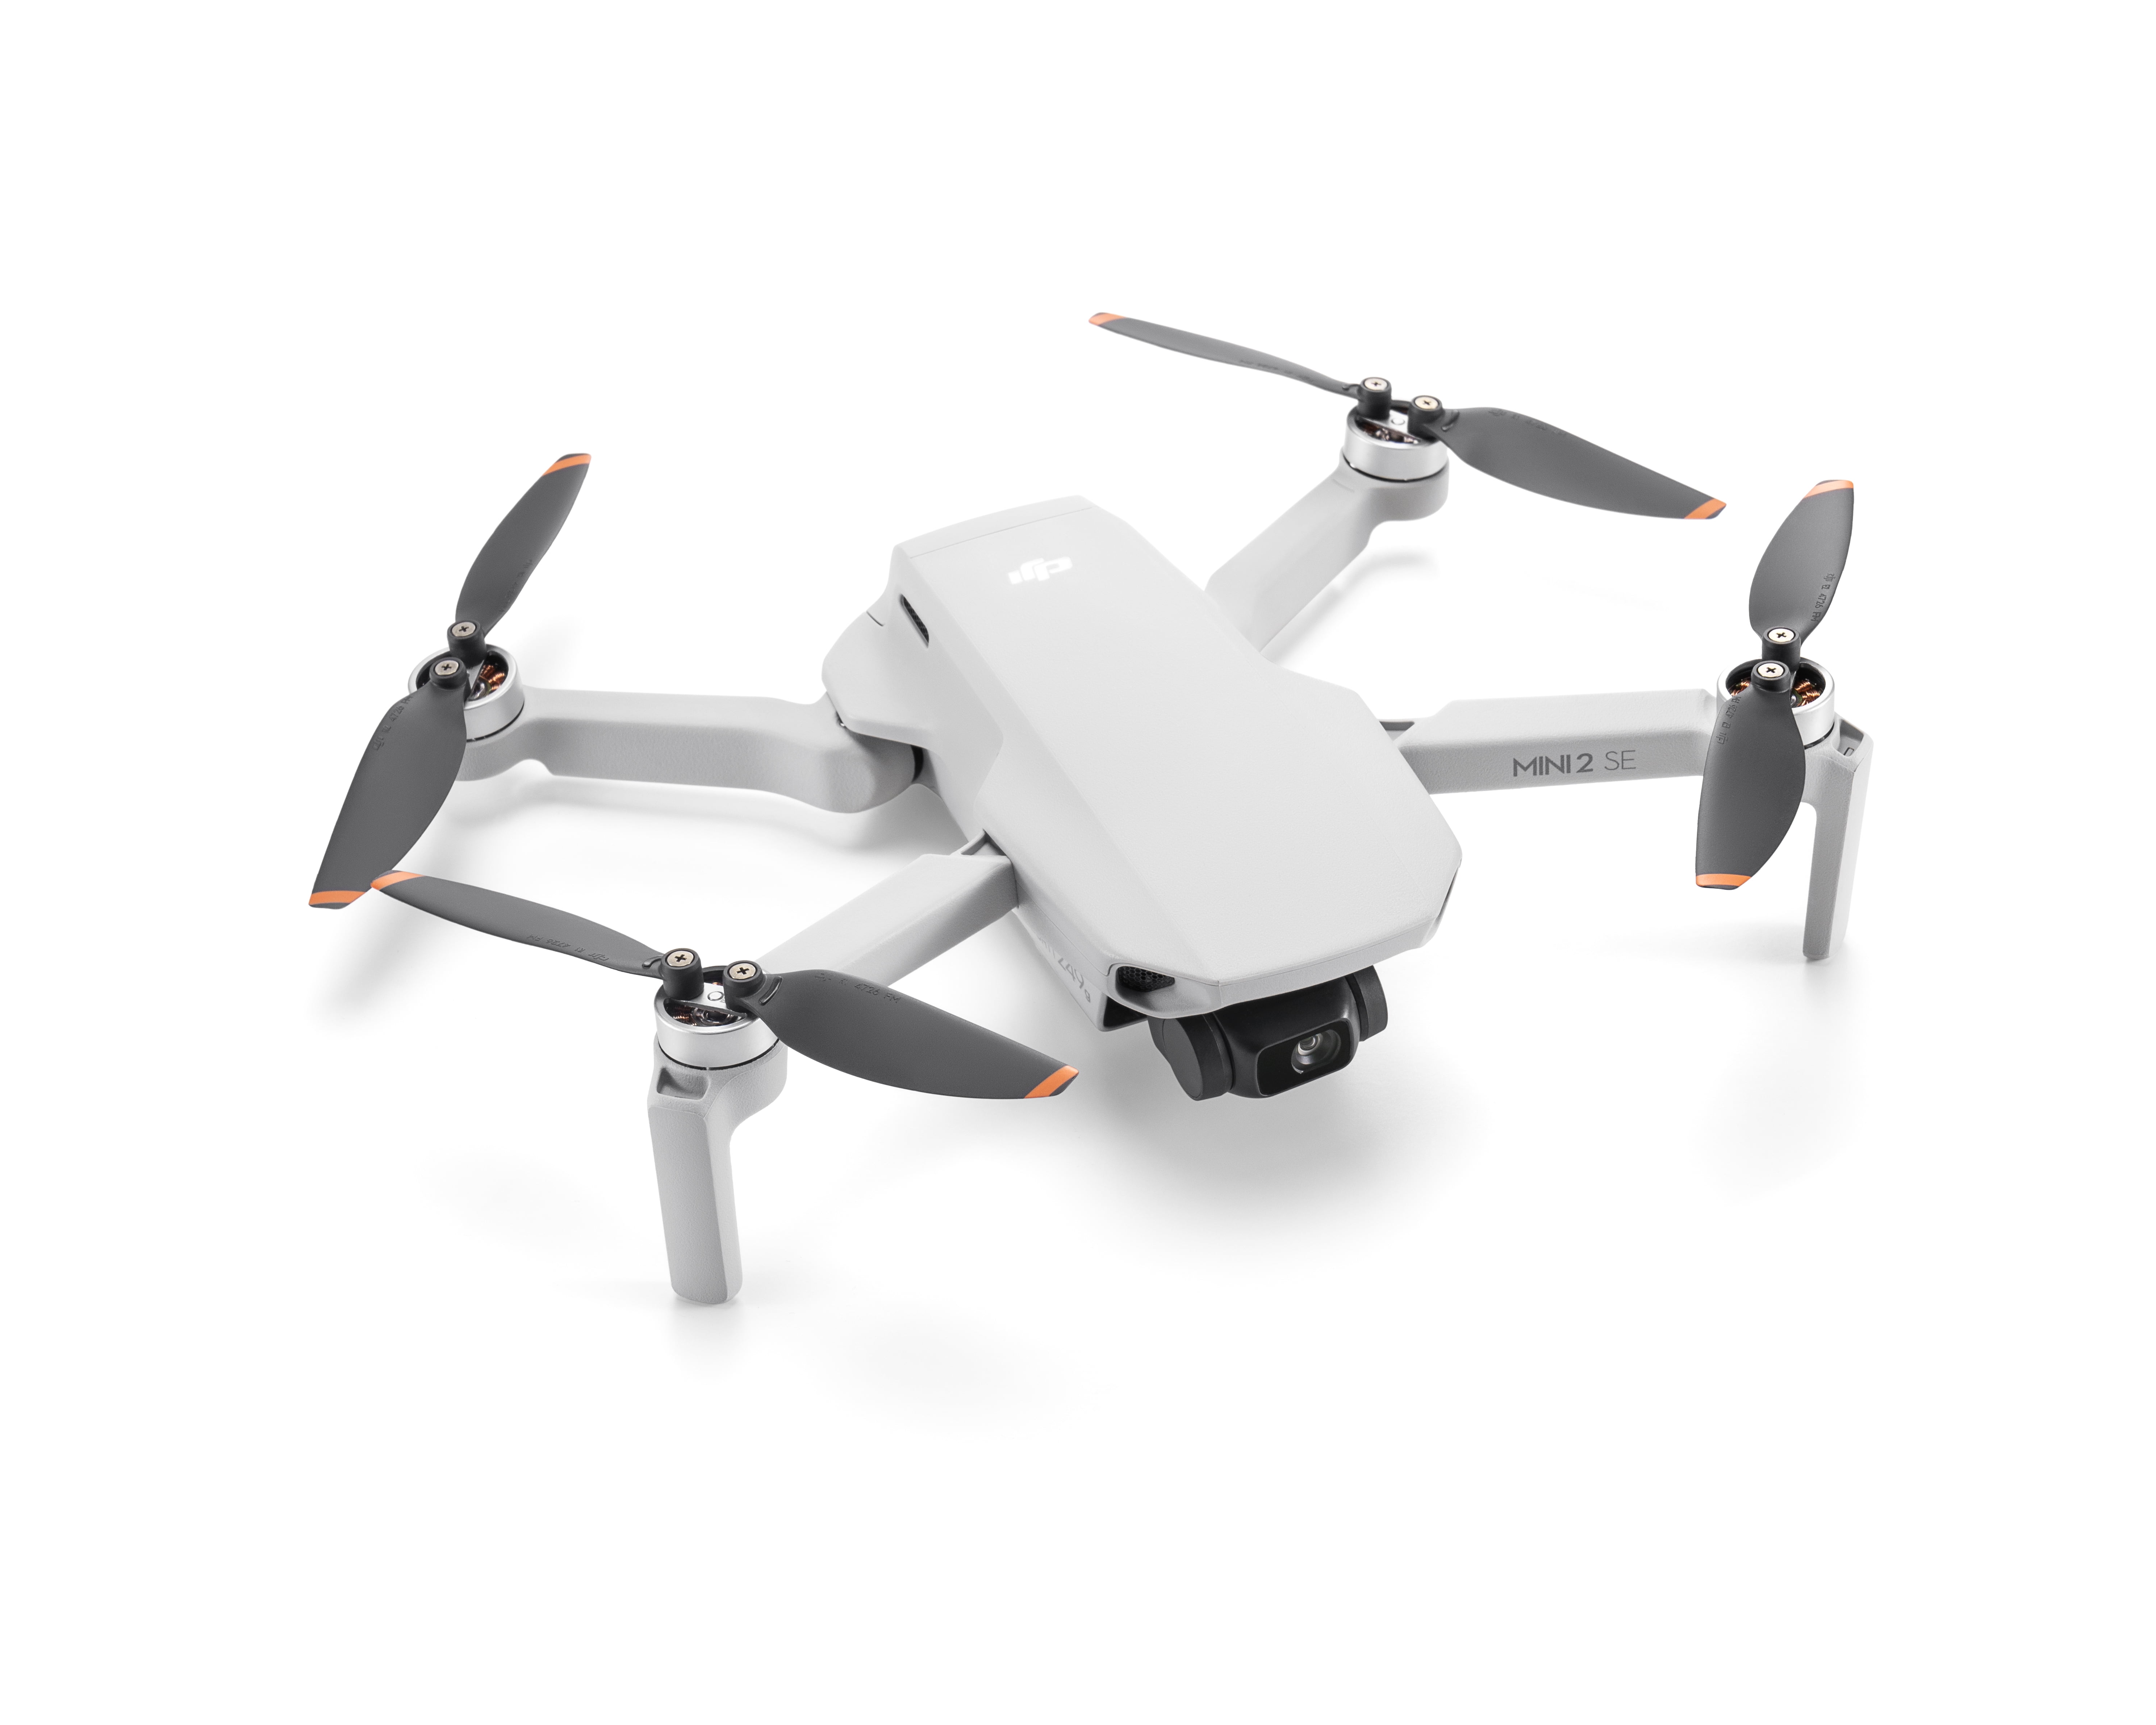 DJI Drone Mini 3 (drone seul) (9394)